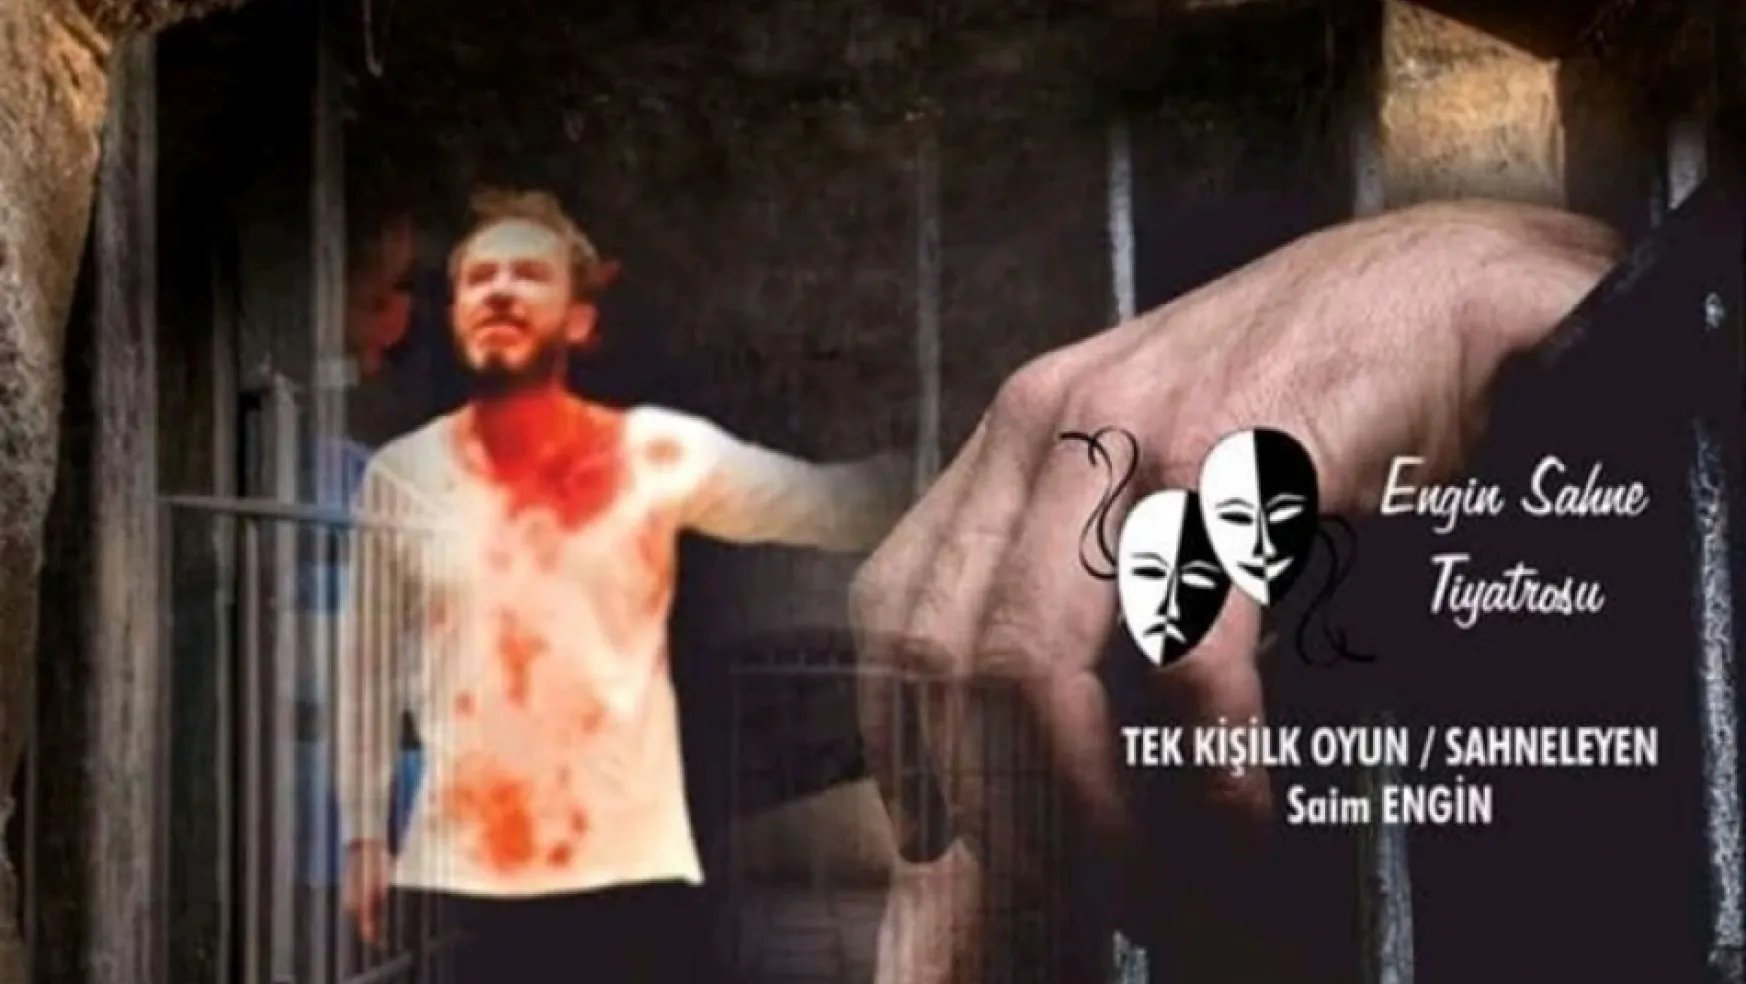 Turgutlu'da CHP'den Ücretsiz Tiyatro Etkinliği